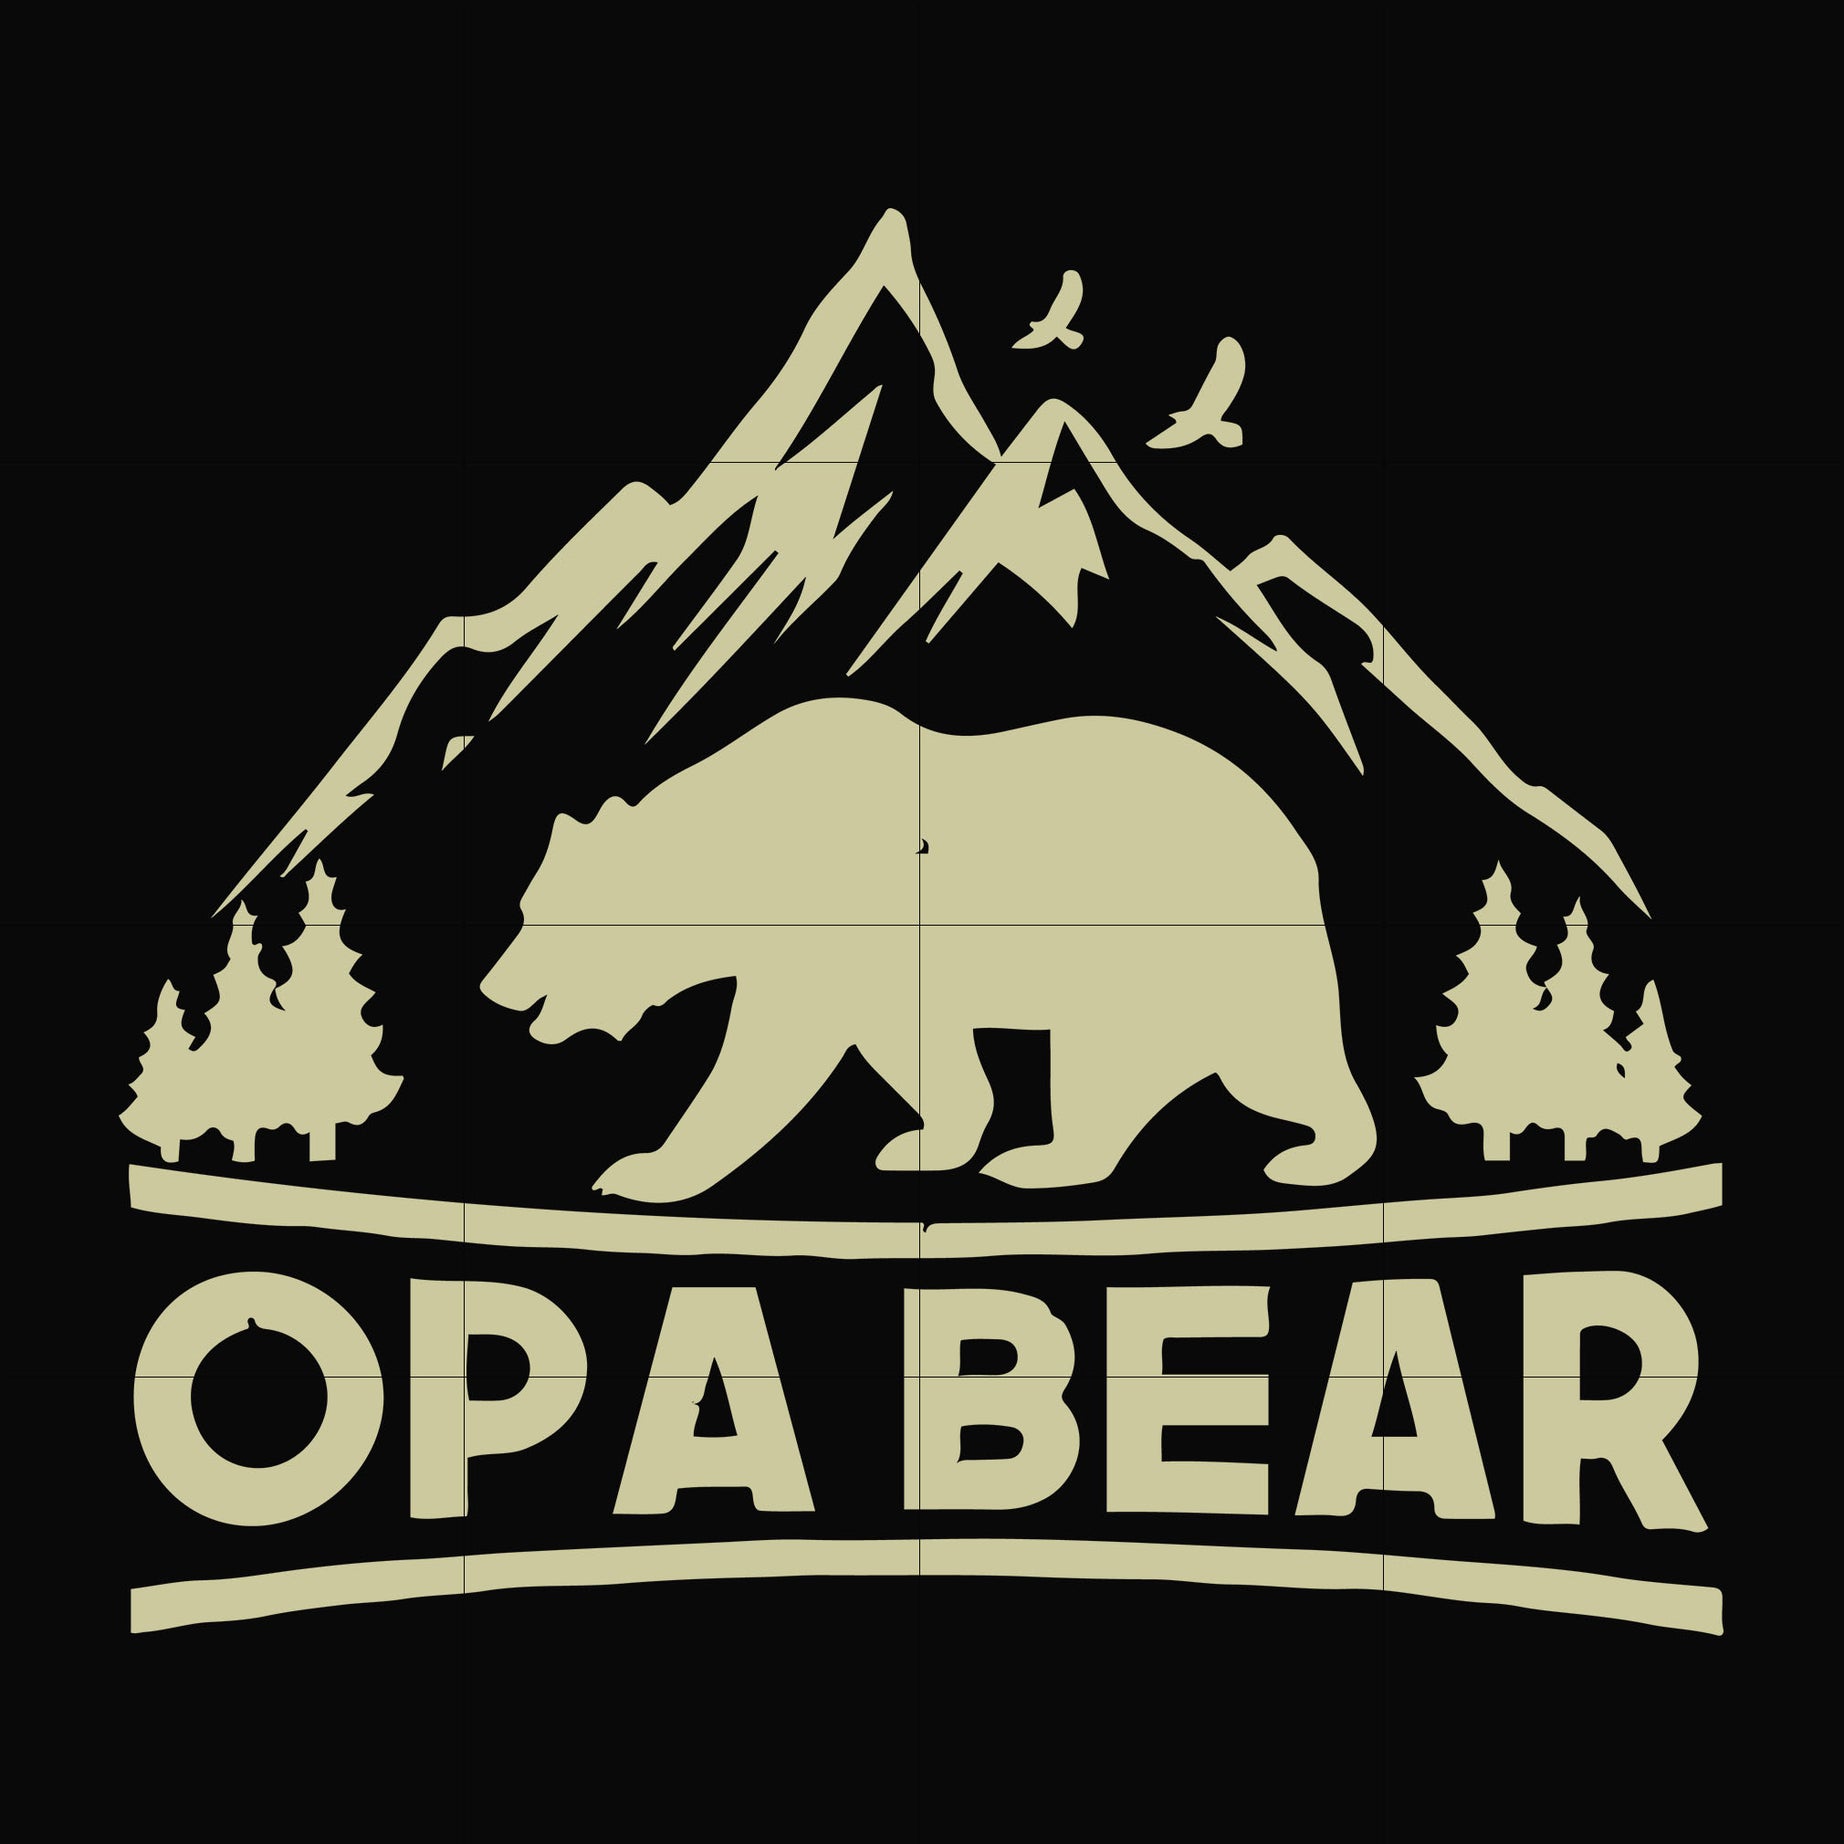 Opa bear svg, png, dxf, eps digital file CMP051